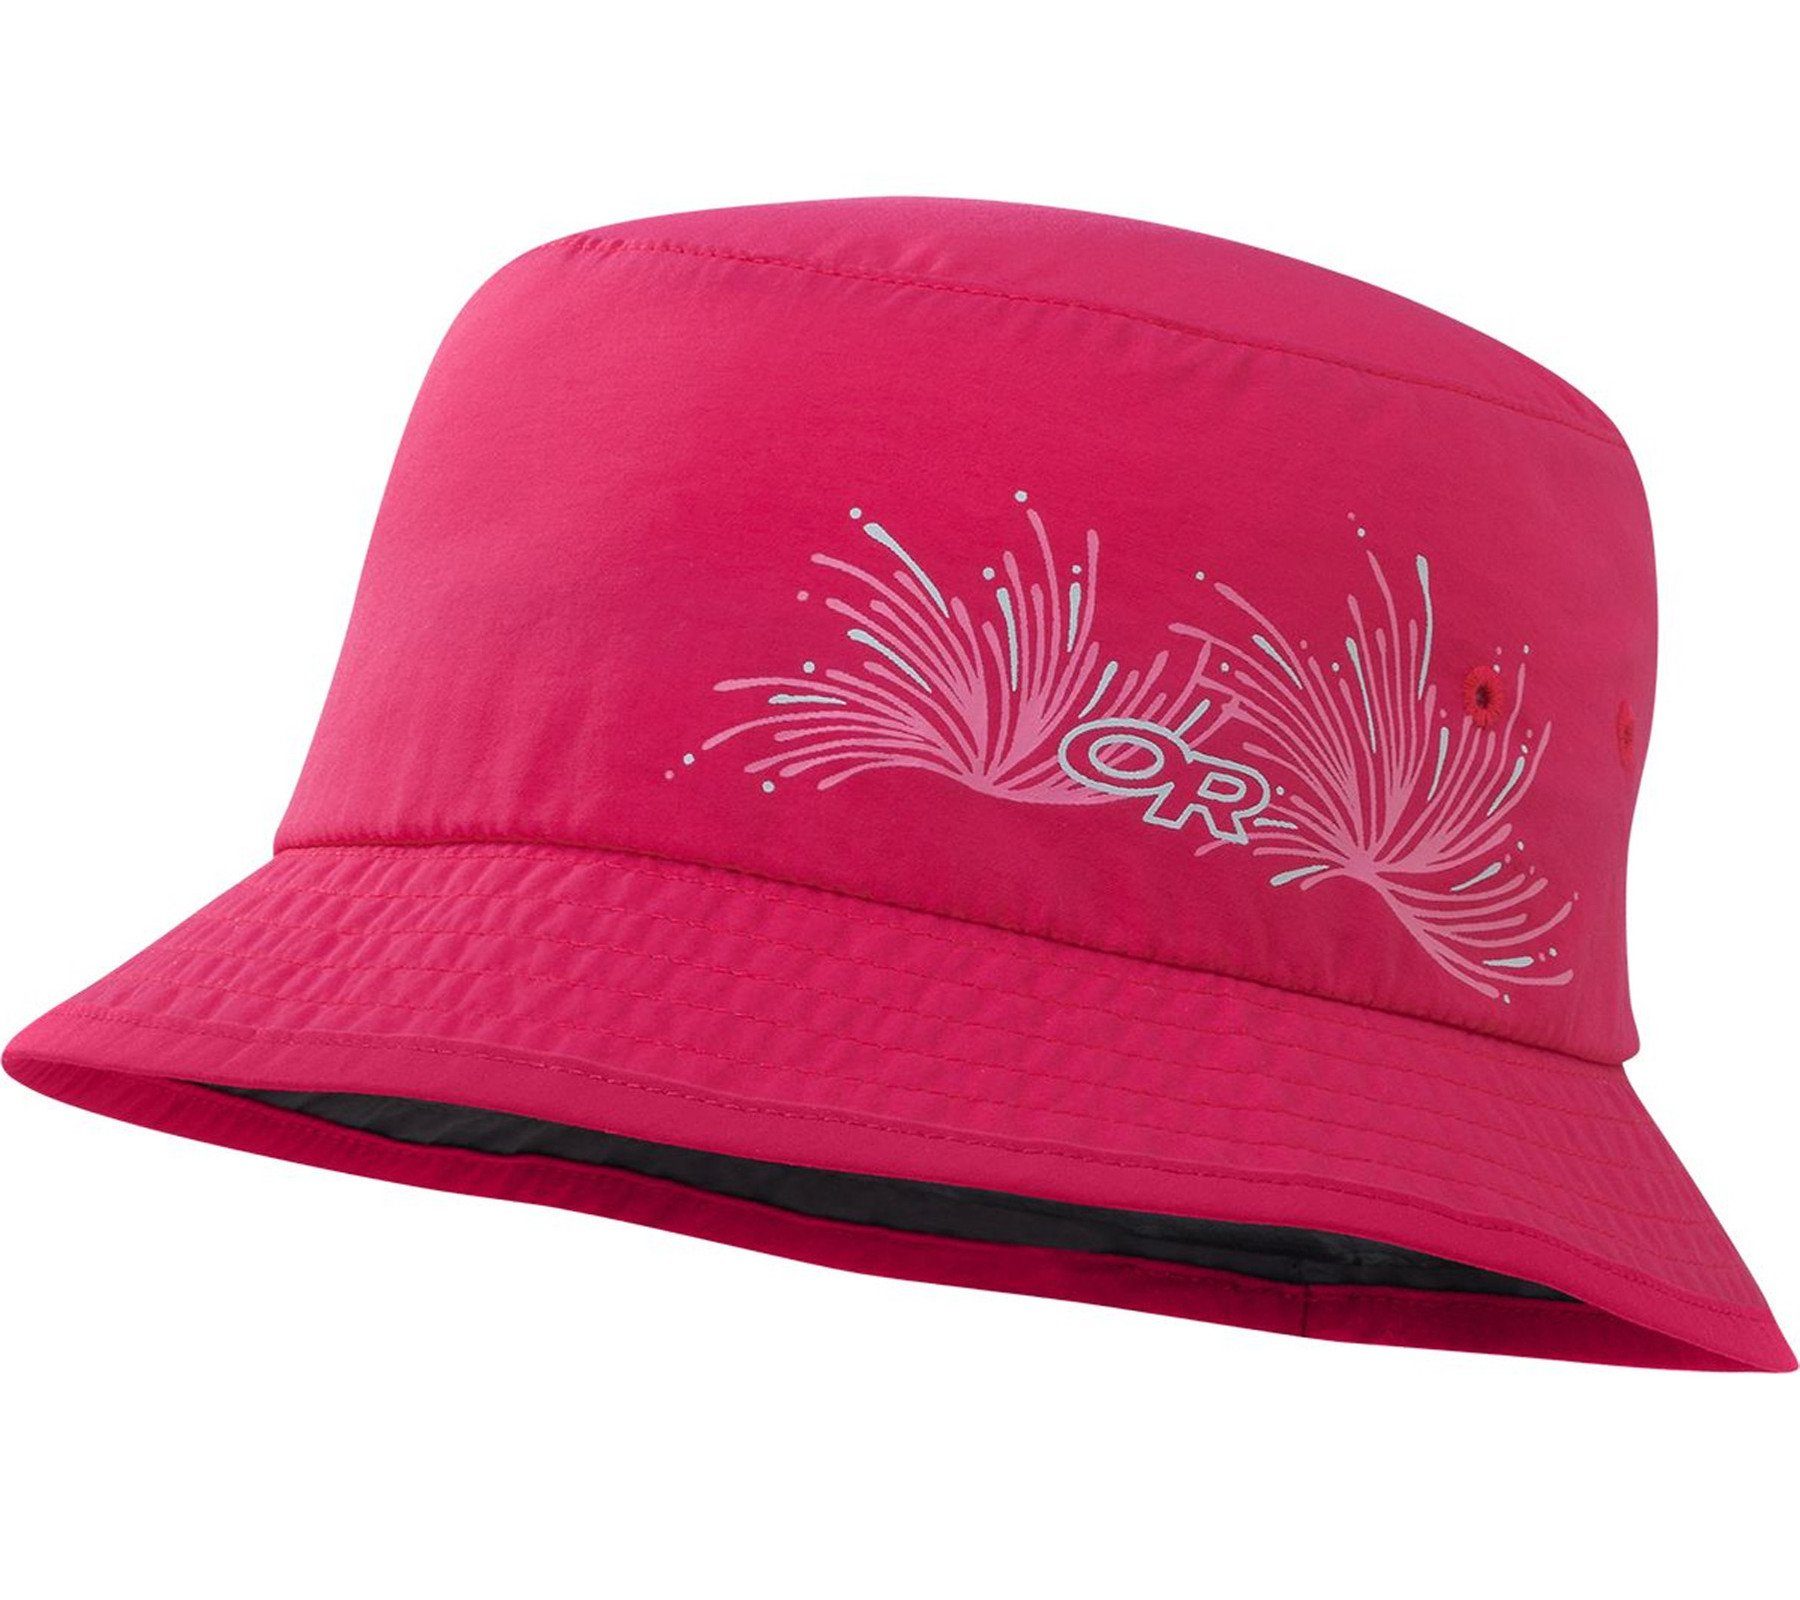 Outdoor Research Sonnenhut »OUTDOOR RESEARCH Solstice Sonnen-Hut toller  Kinder-Hut mit hohem Schutz vor Sonneneinstrahlung Kopfbedeckung Pink«  online kaufen | OTTO